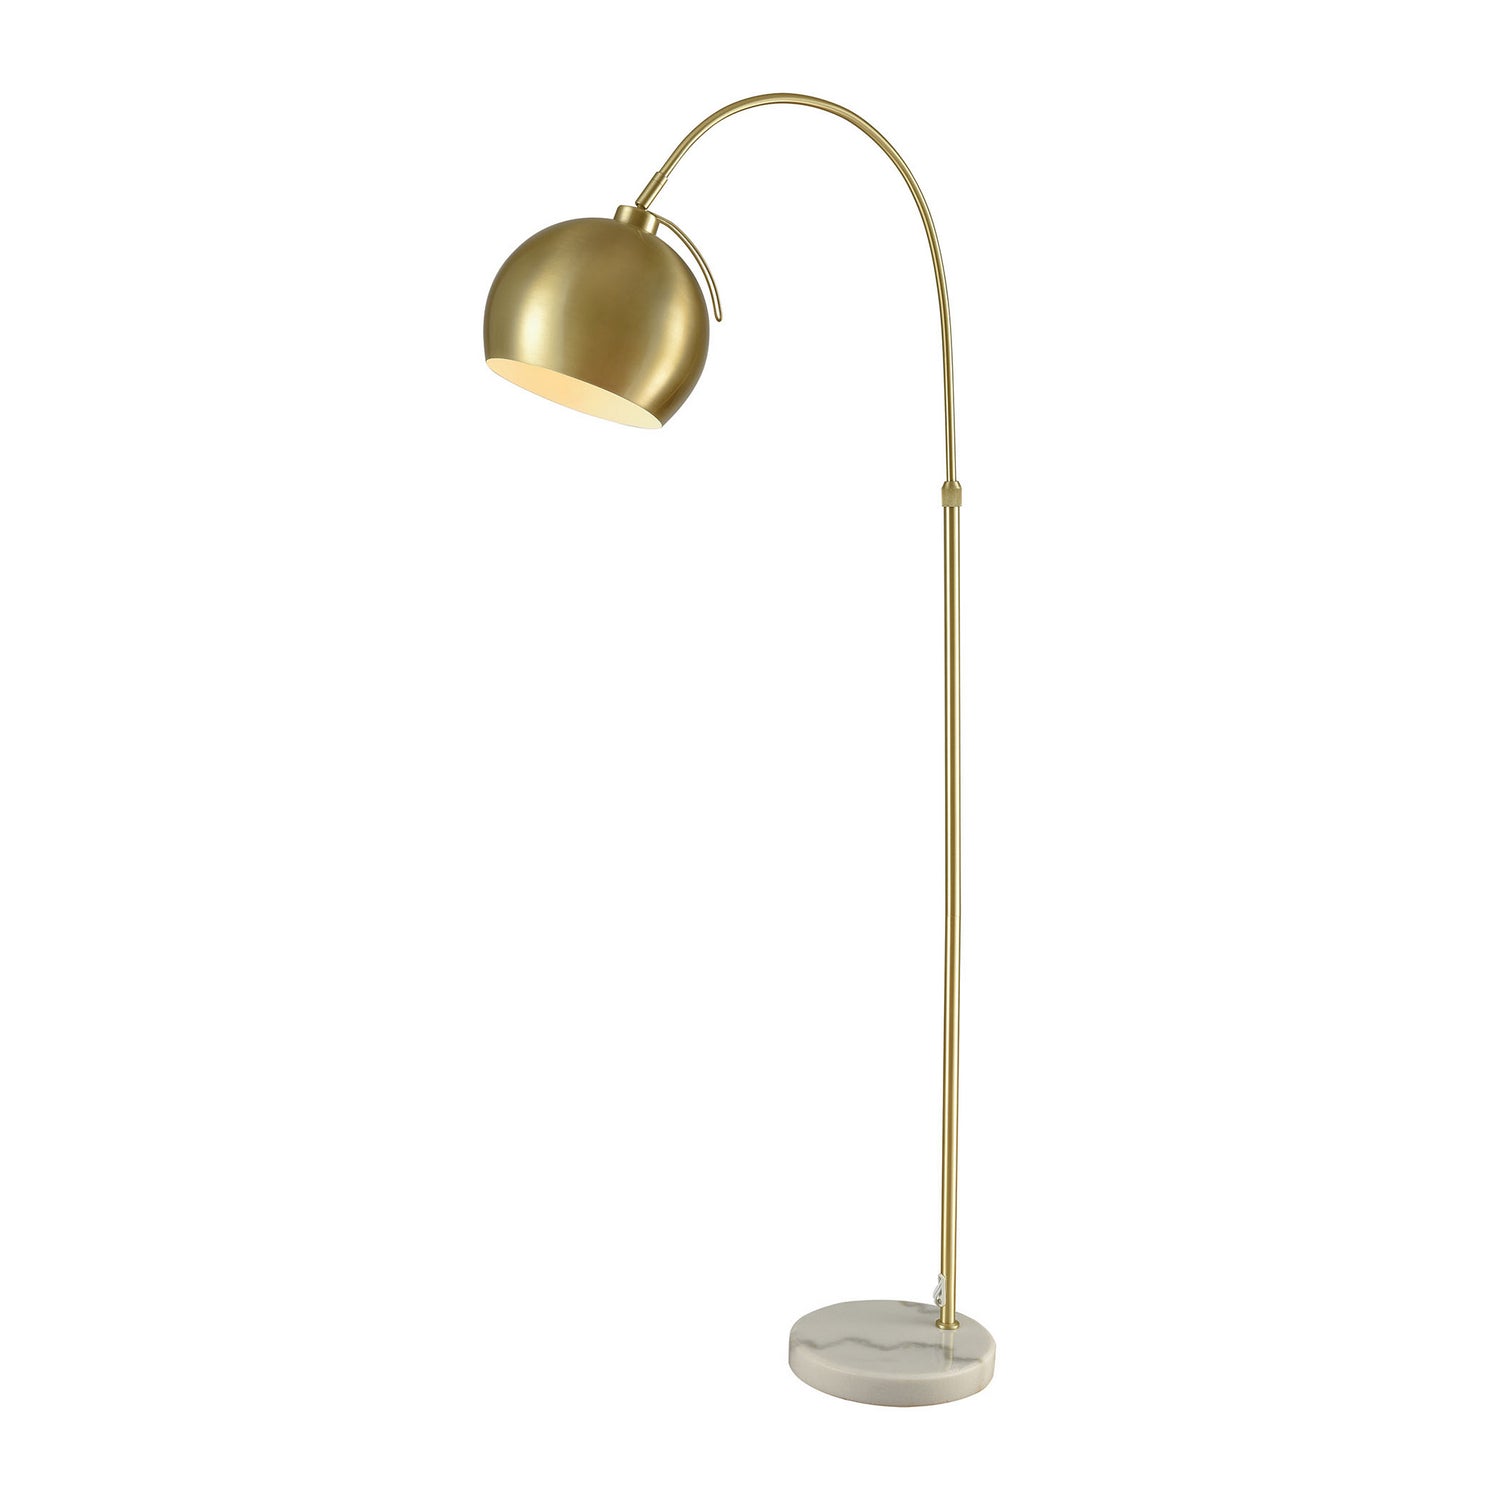 ELK Home - D3363 - One Light Floor Lamp - Kopernikus - Aged Brass